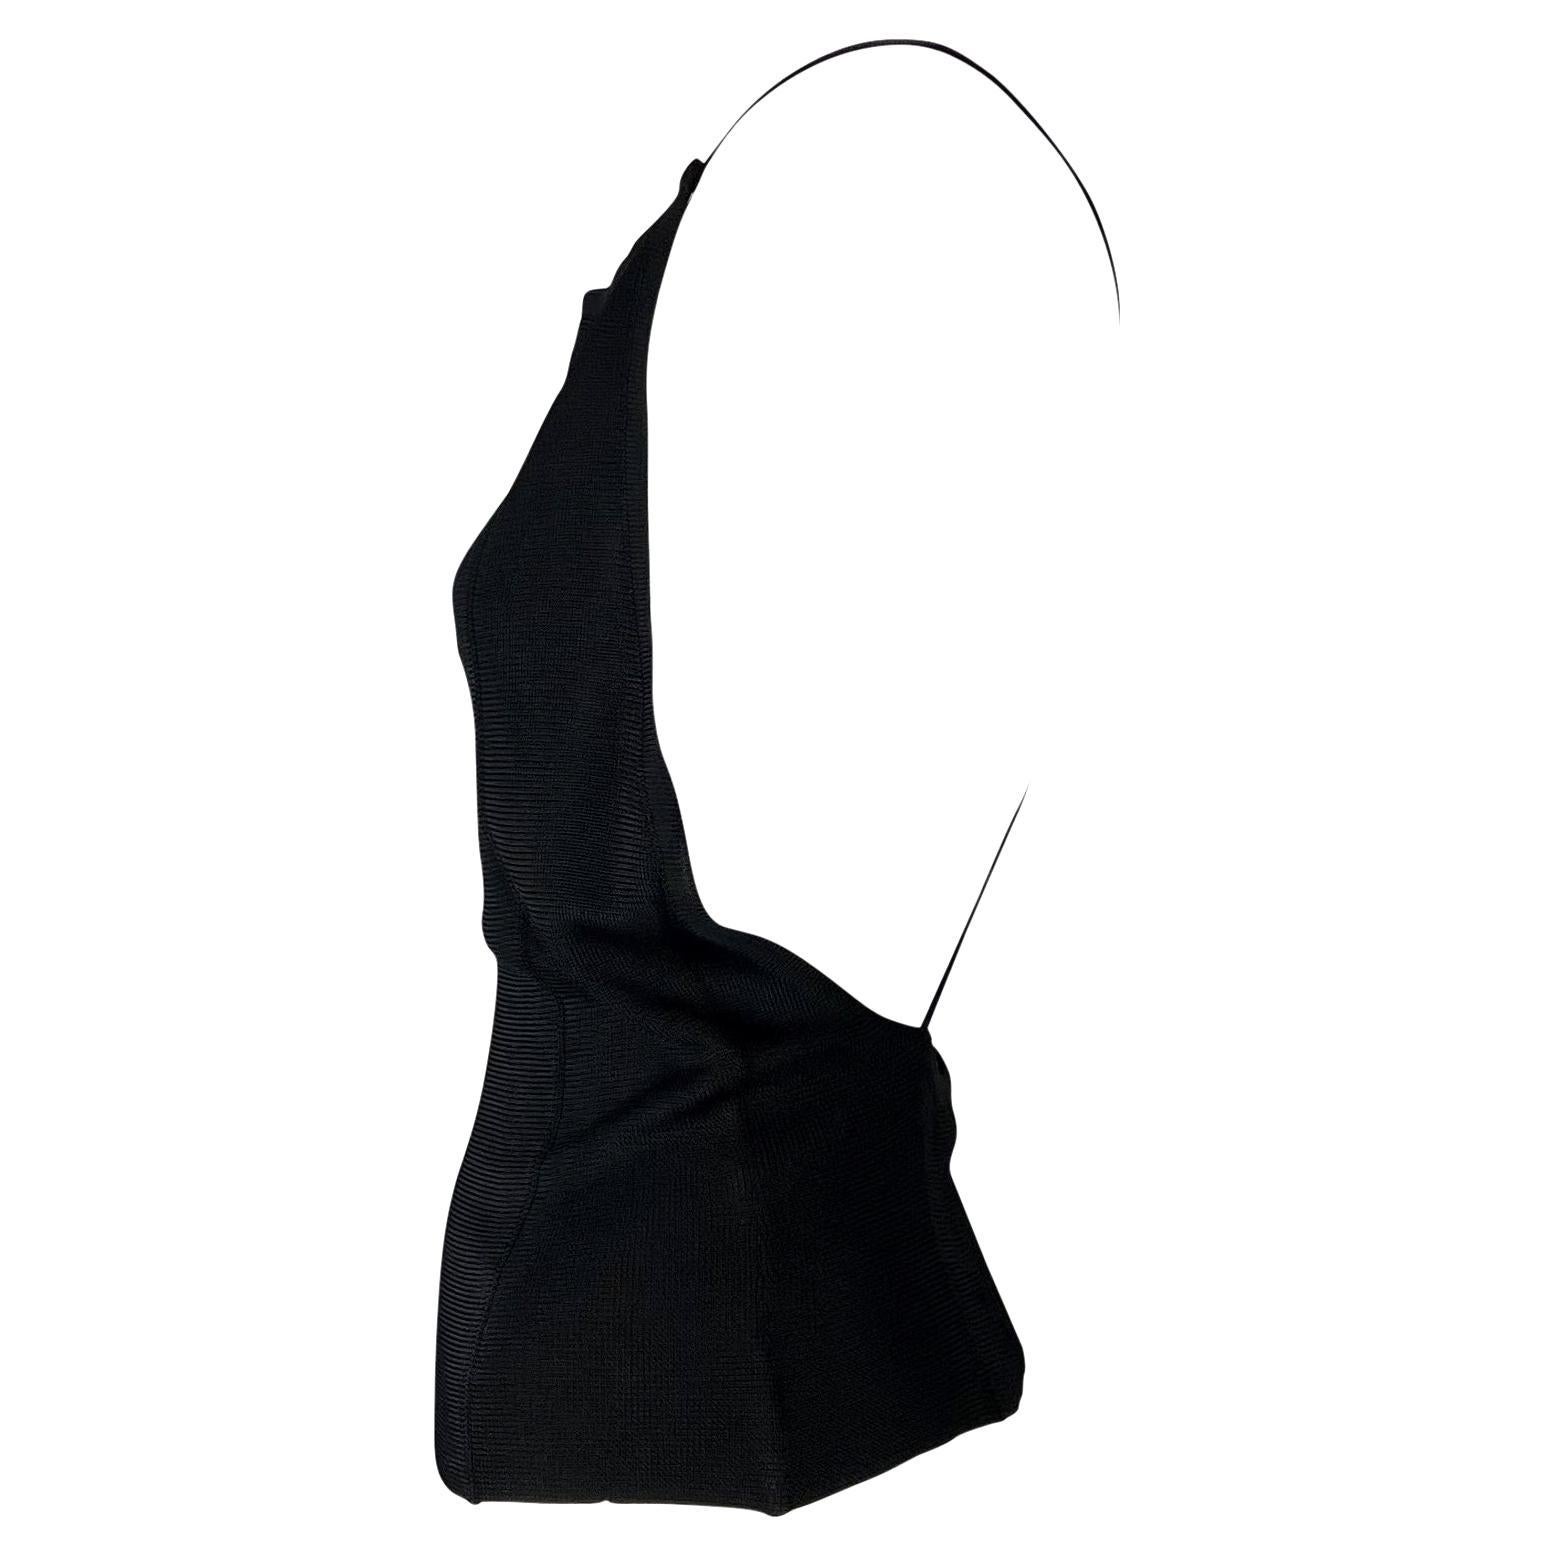 Wir präsentieren ein umwerfendes schwarzes rückenfreies Gucci-Top, entworfen von Tom Ford. Dieses gestrickte Viskose-Top aus der Frühjahr/Sommer-Kollektion 1997 hat einen weiten Rundhalsausschnitt, Spaghettiträger und einen offenen Rücken. Die